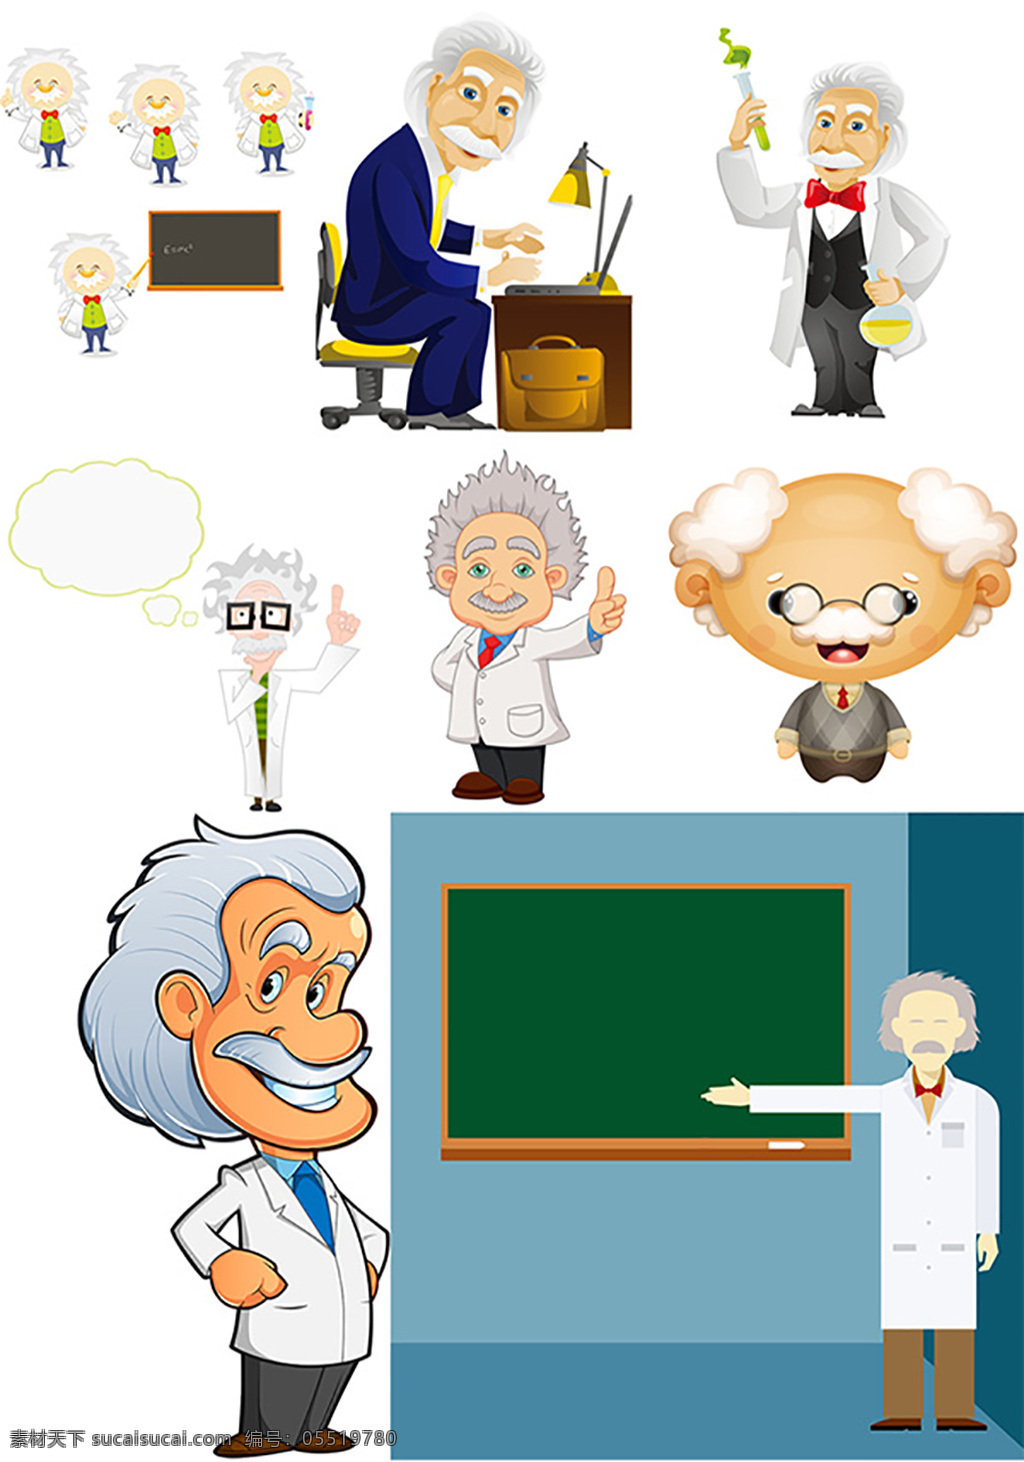 科学家 老人 矢量 老年人 科学实验 科学研究 做实验 化学实验 生物实验 卡通男人 男性插画 日常生活 矢量人物 矢量素材 白色